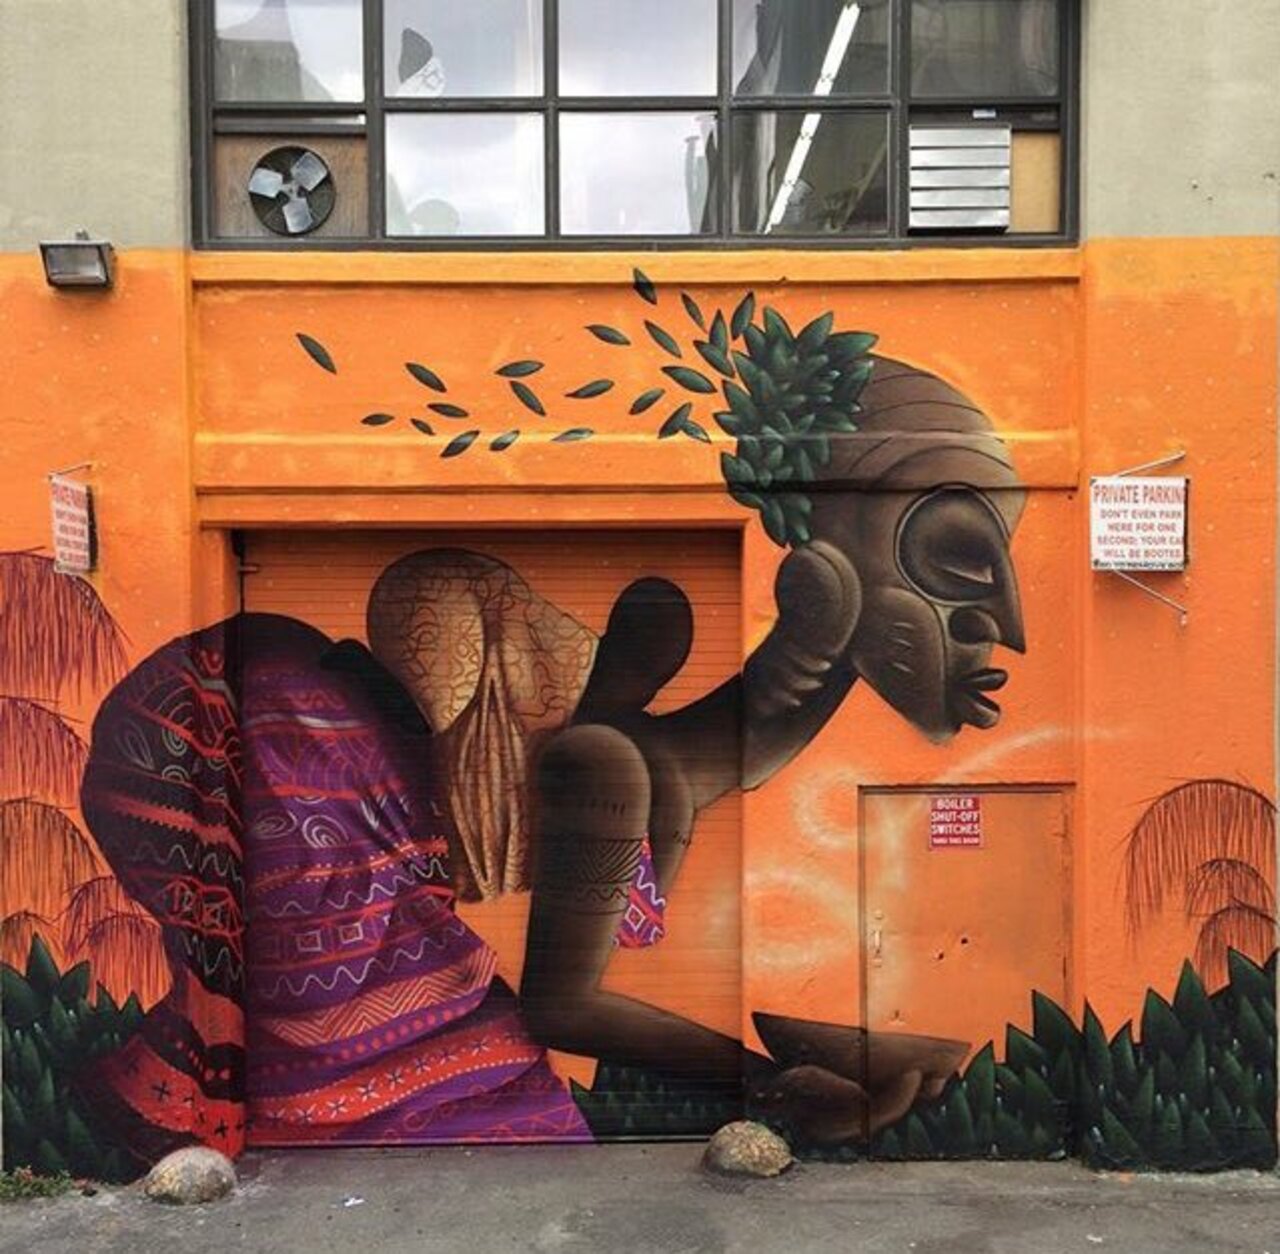 New Street Art by Alexandre Keto in NYC 

#art #graffiti #mural #streetart https://t.co/G7NVwKGOdy